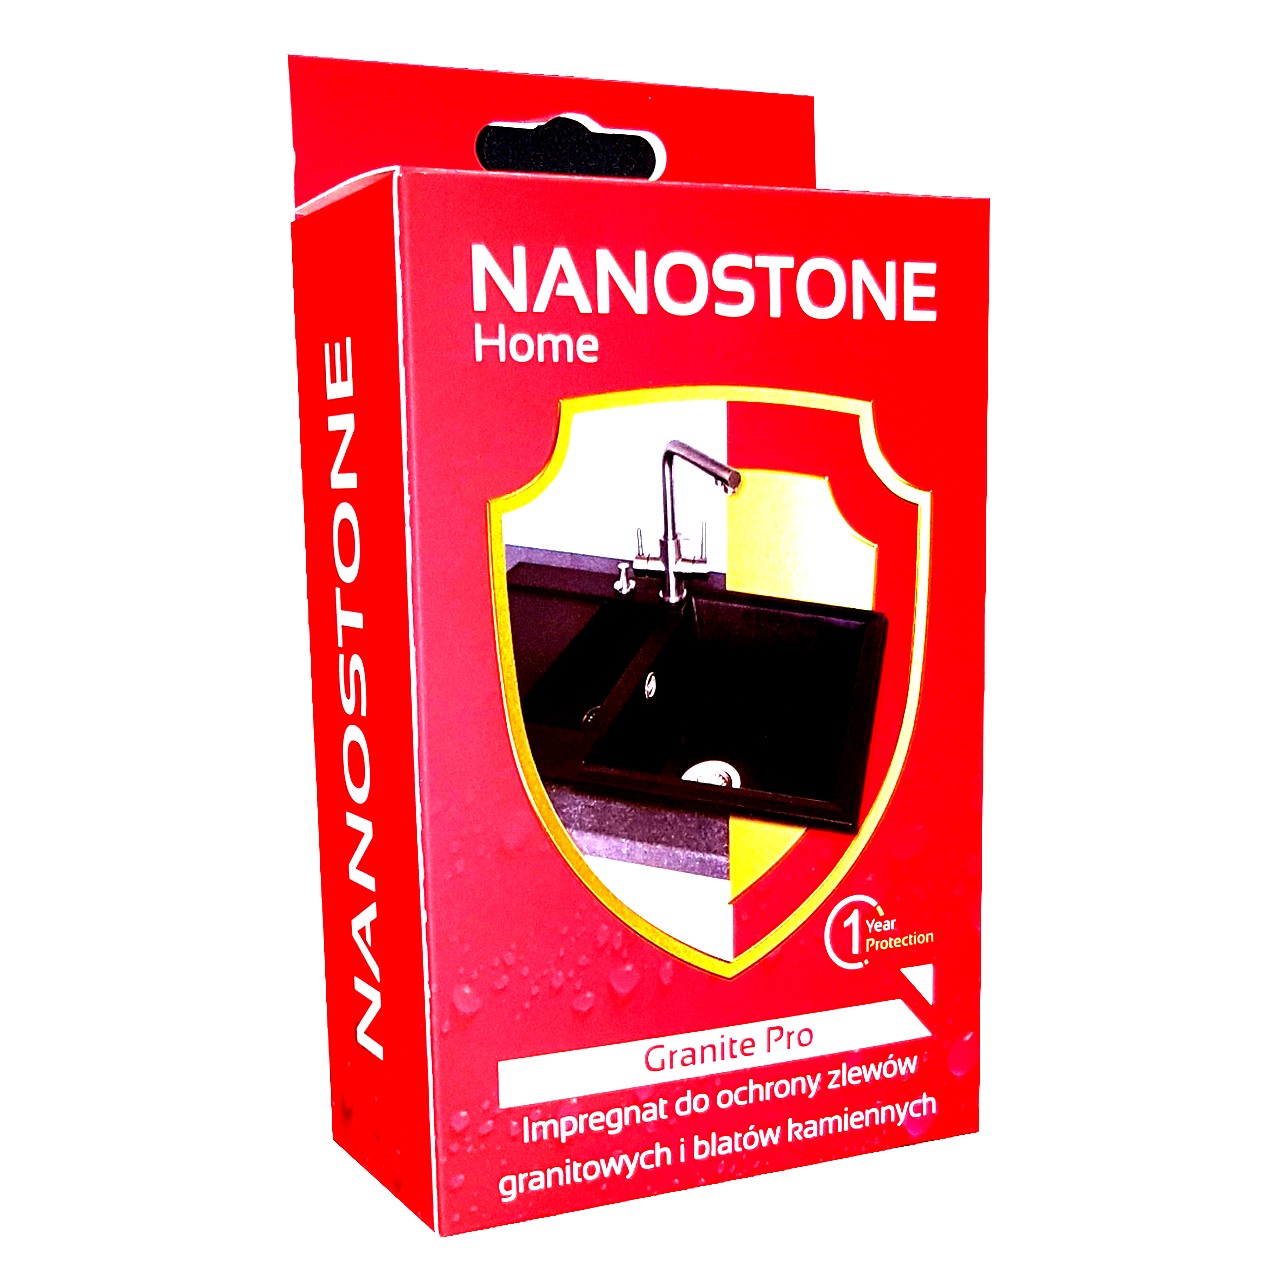 NANOSTONE HOME GRANITE PRO Impregnat zlewów granitowych i blatów kamiennych 60 ml - Nanobiz zdjęcie 1